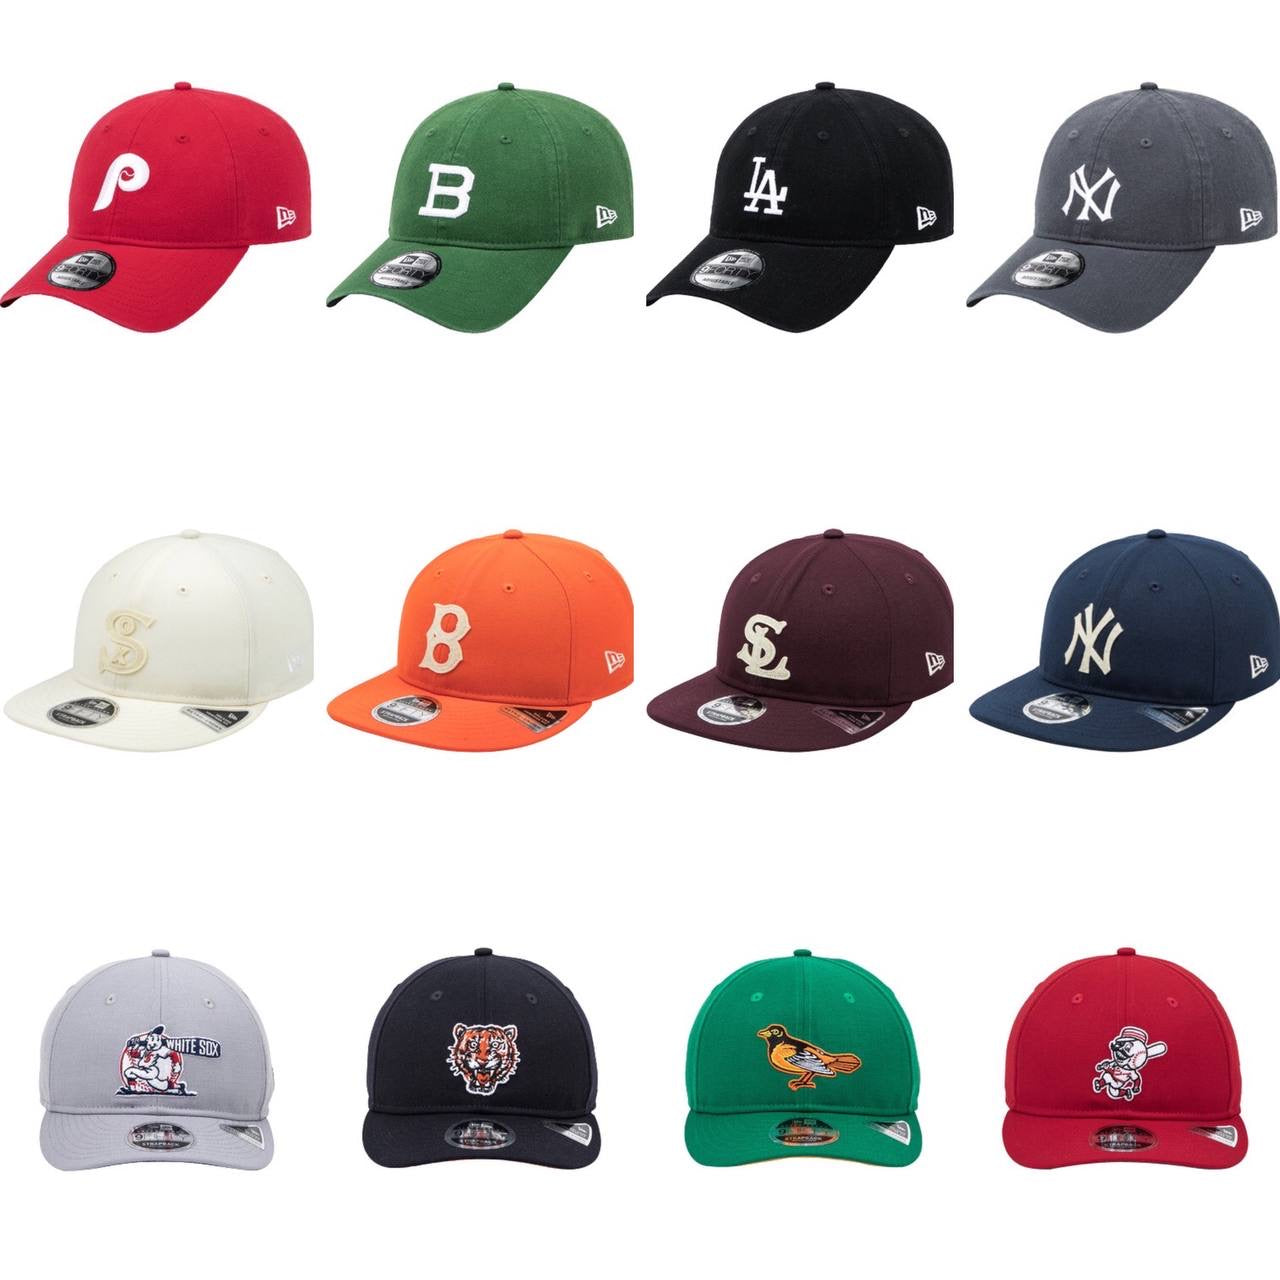 MLB YANKEES NEWERA Cap - Collection #2